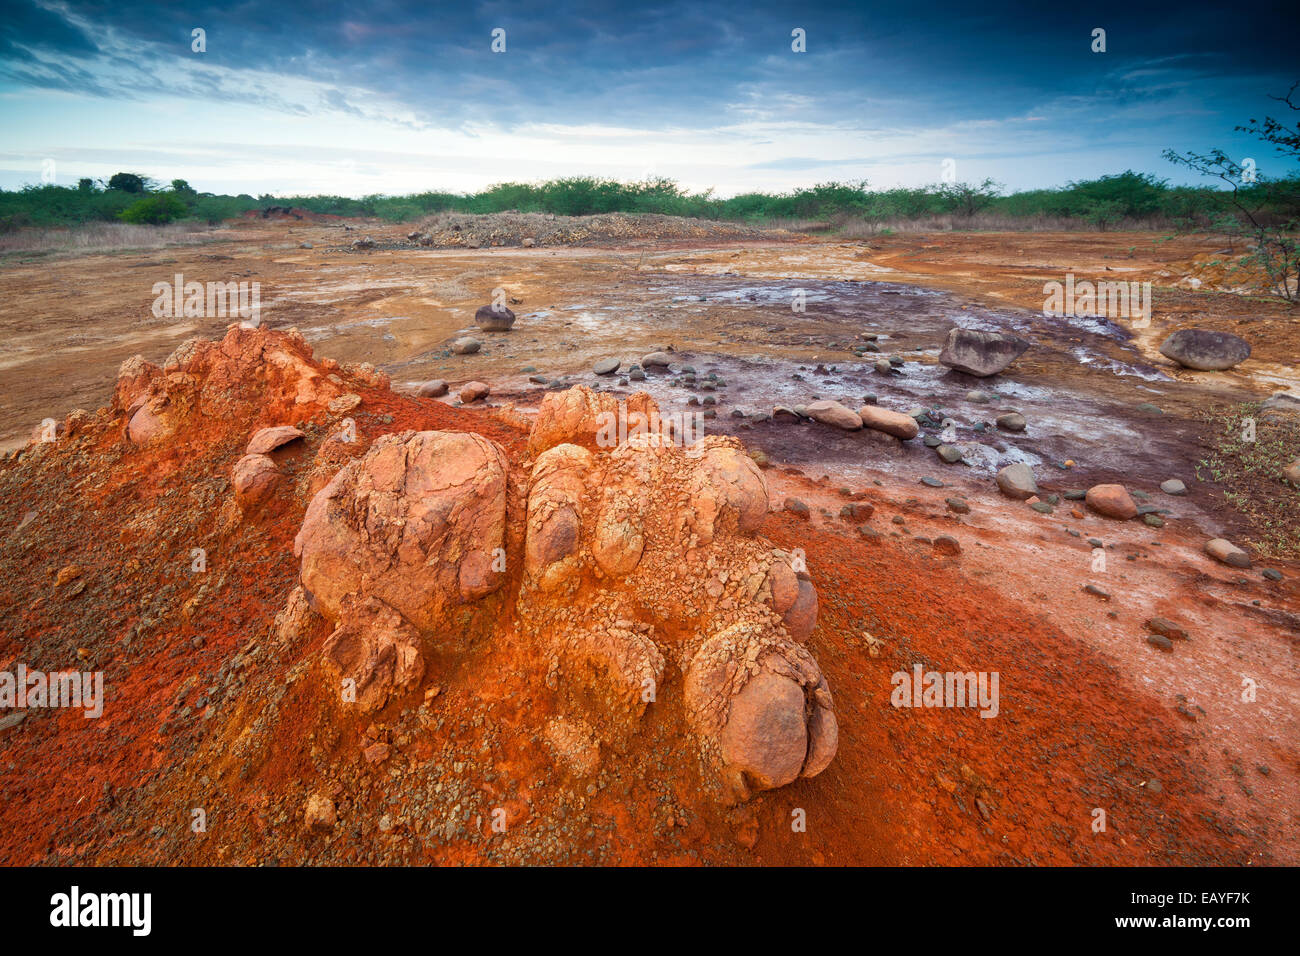 Paisaje de Panamá con suelo erosionado en el Parque Nacional Sarigua (desierto), provincia de Herrera, península de Azuero, República de Panamá, Centroamérica. Foto de stock